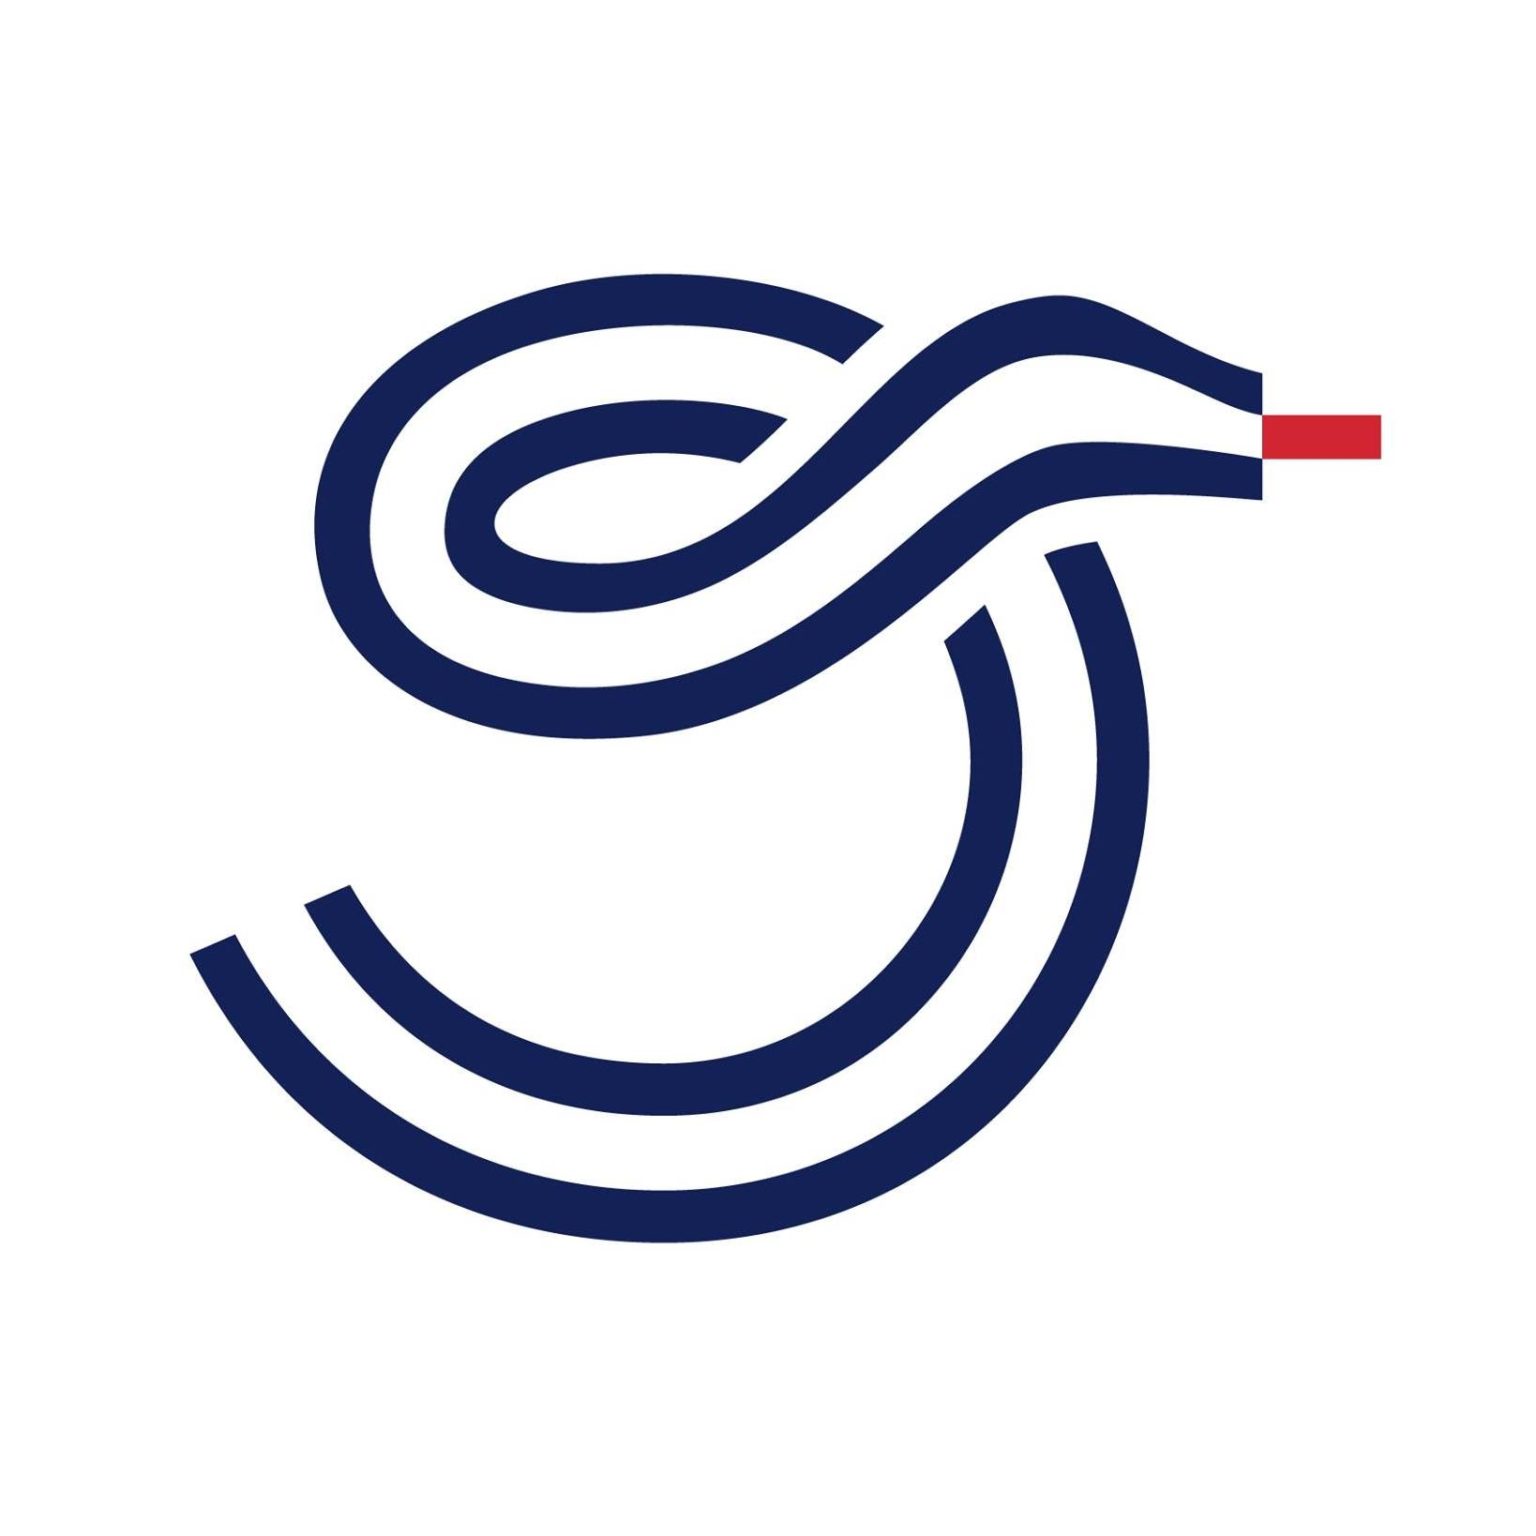 La Boucle logo